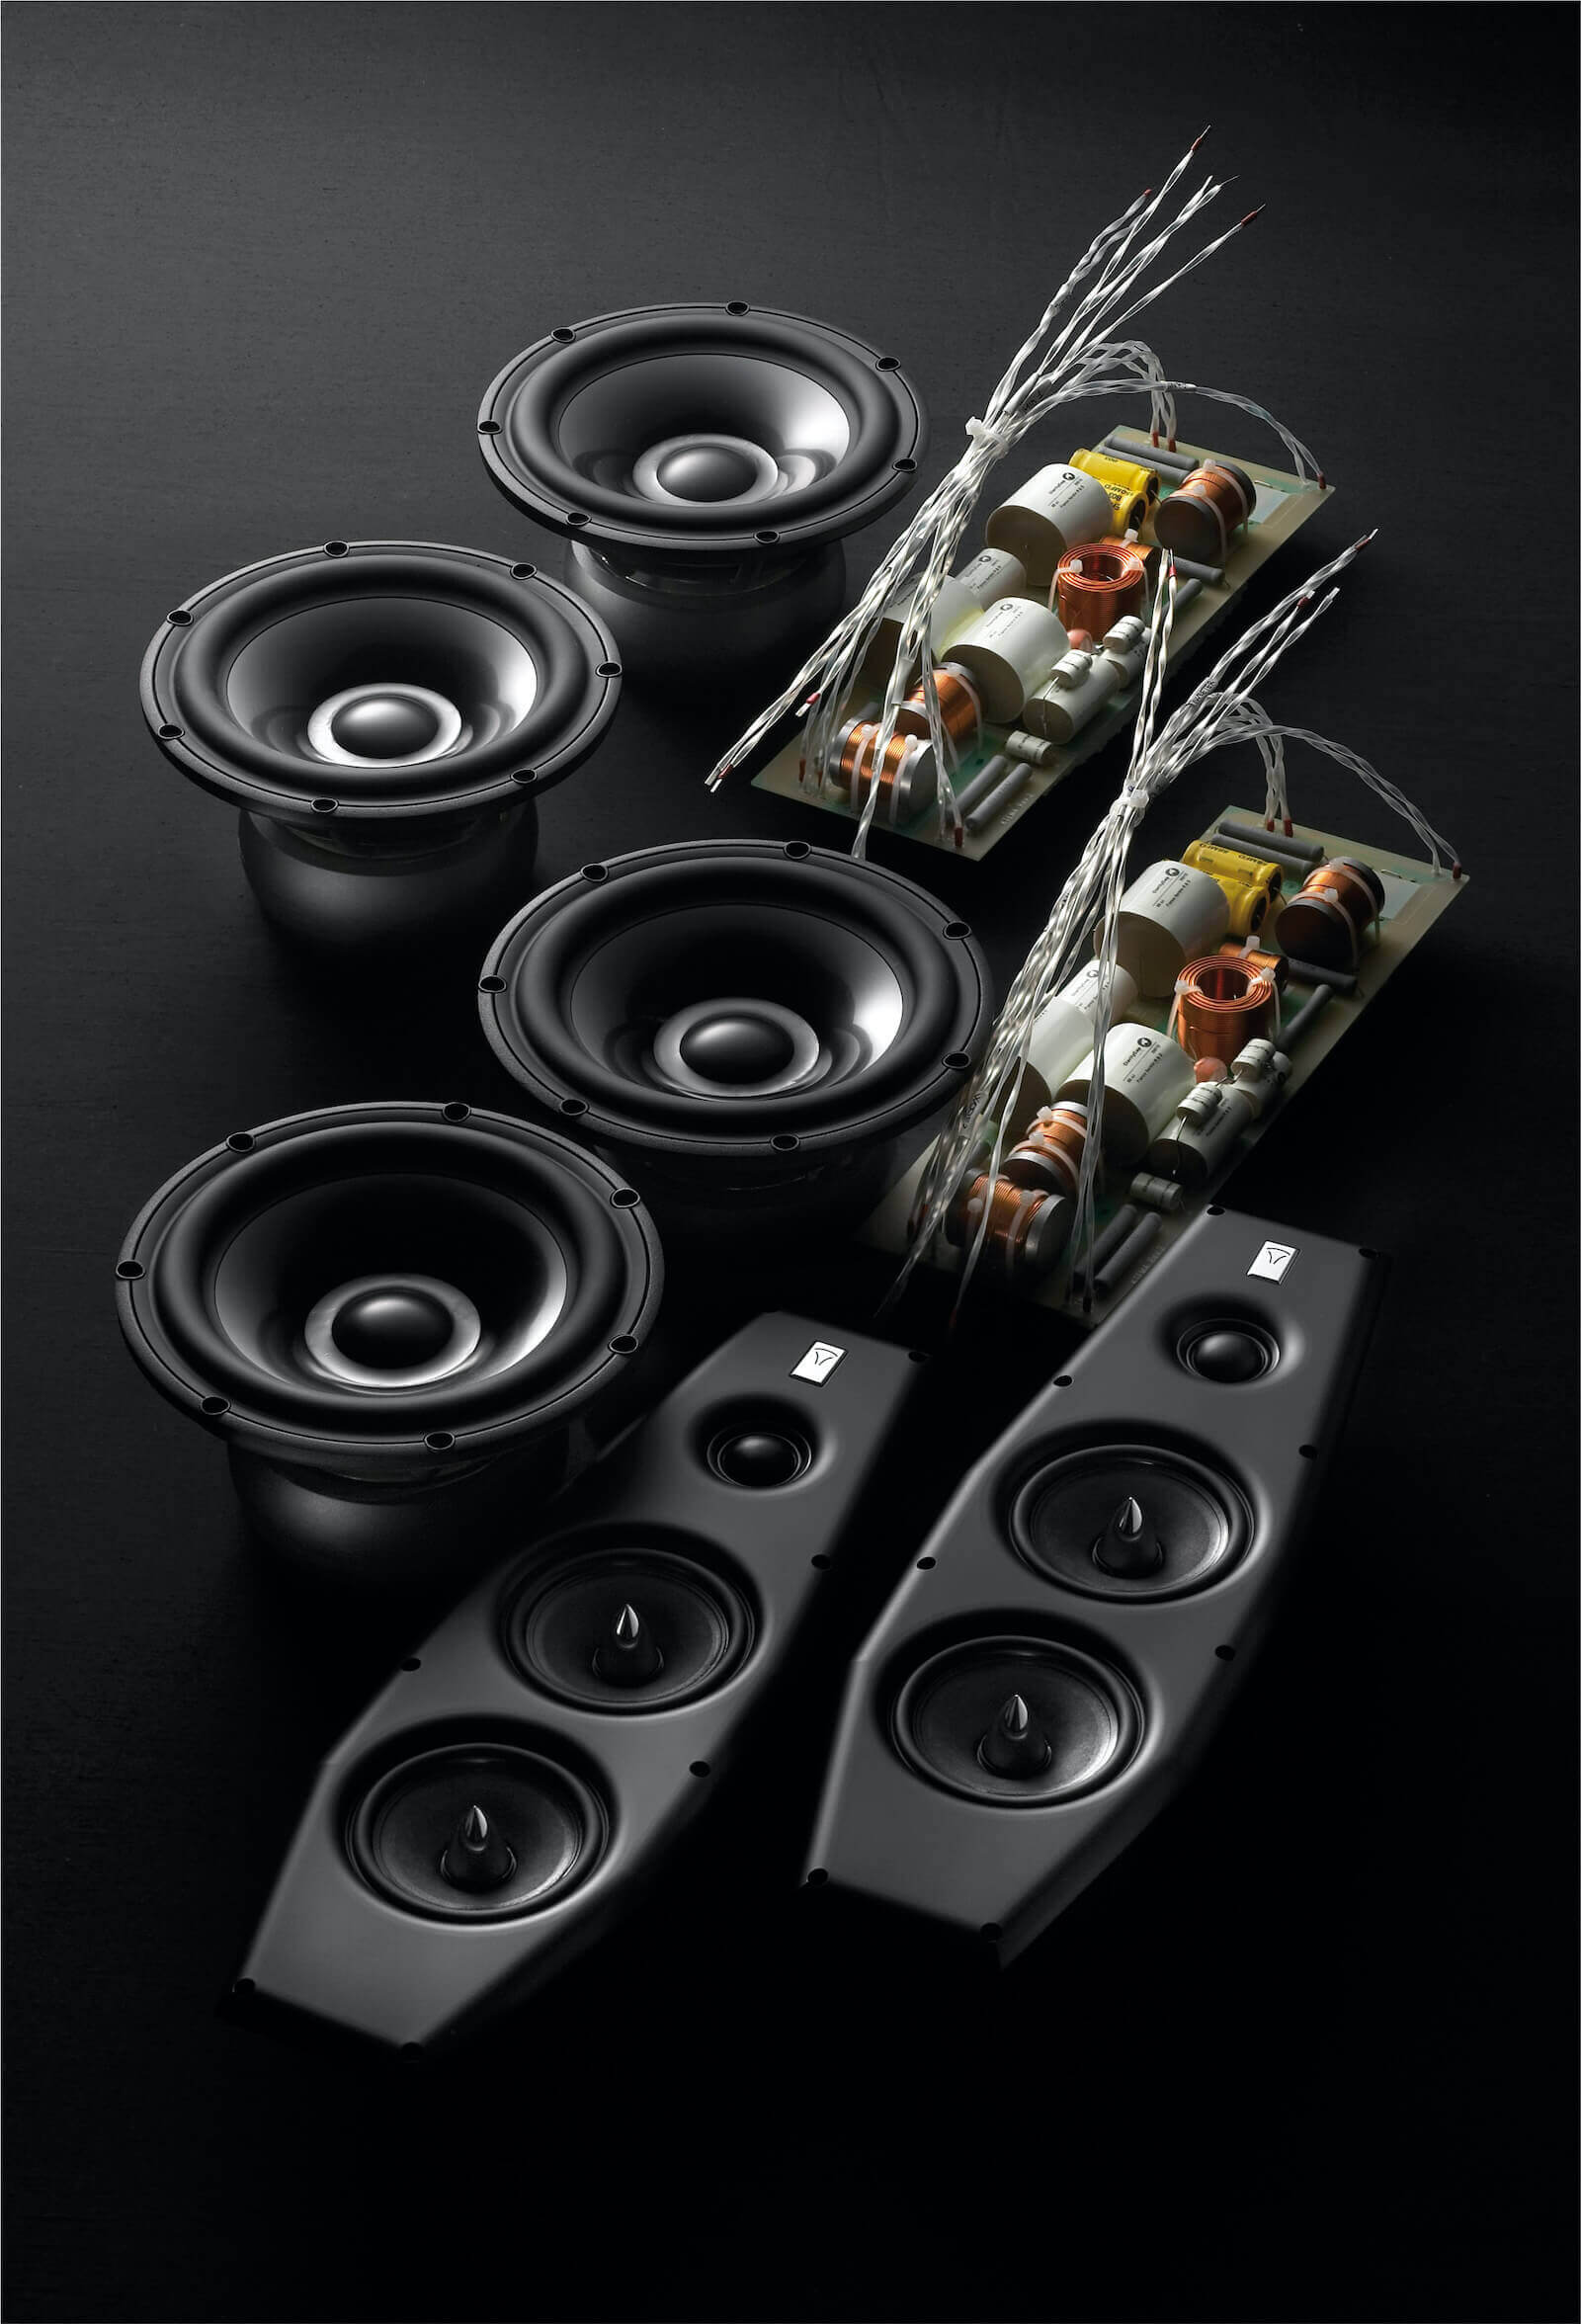 Auseinandergebaute Einzelteile des Lautsprechers vor einem schwarzen Hintergrund